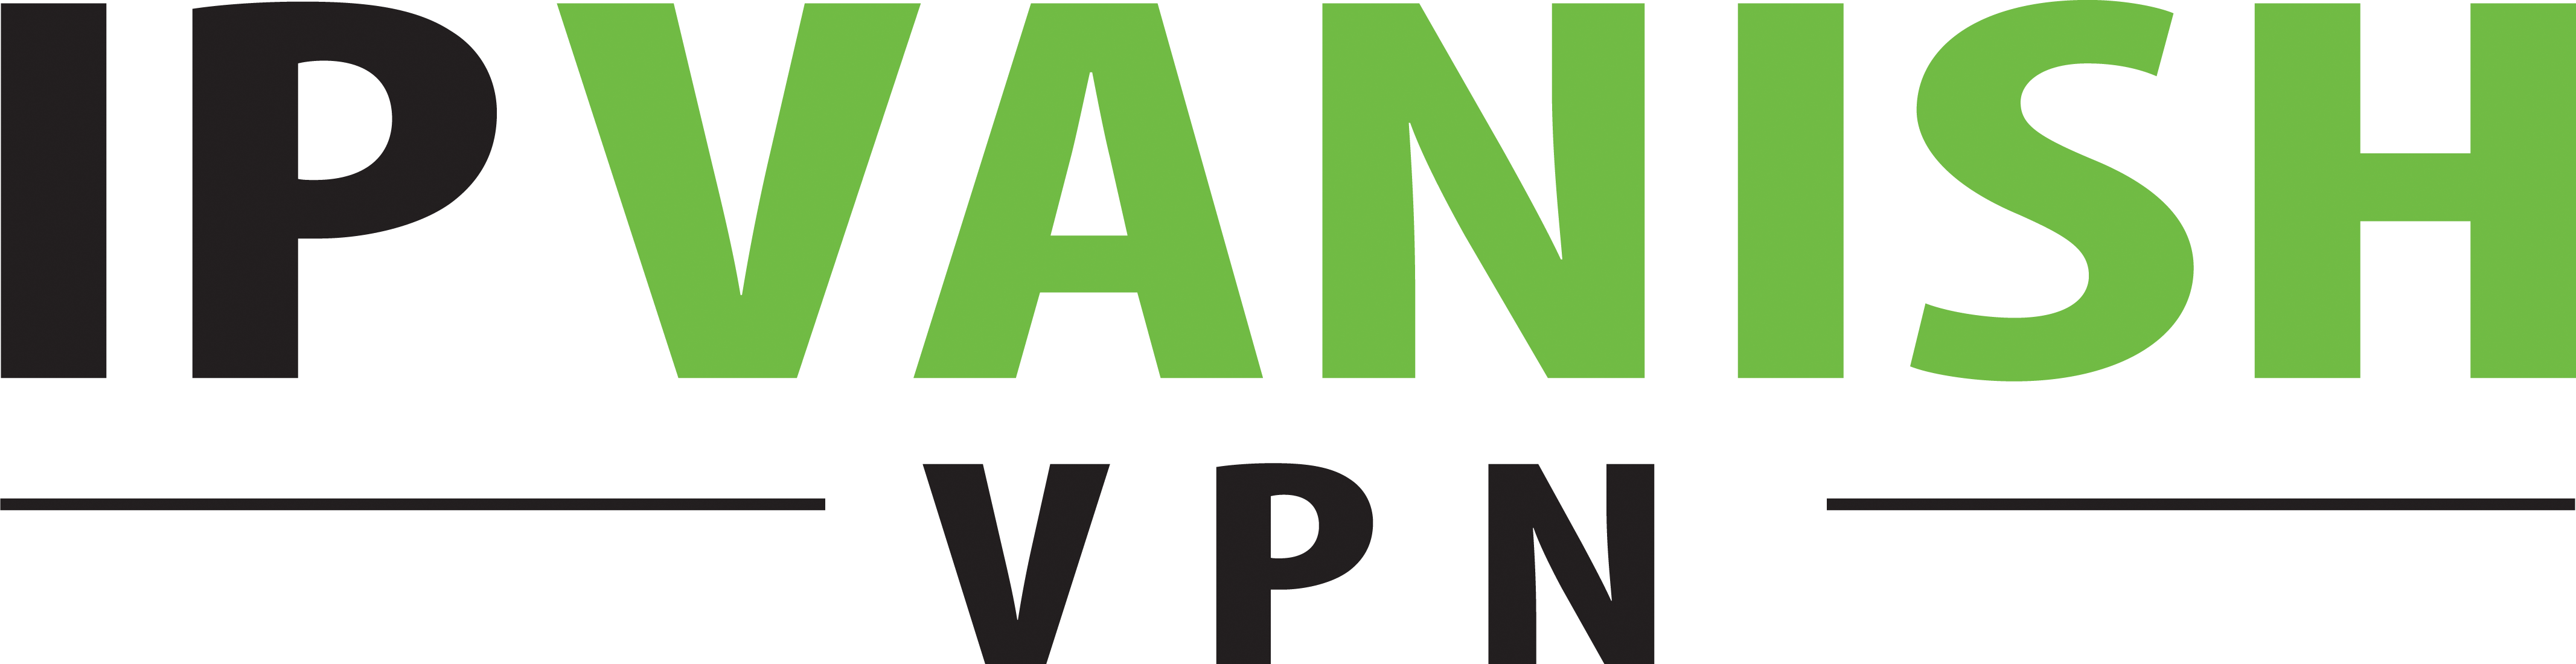 ipvanish-text-logo